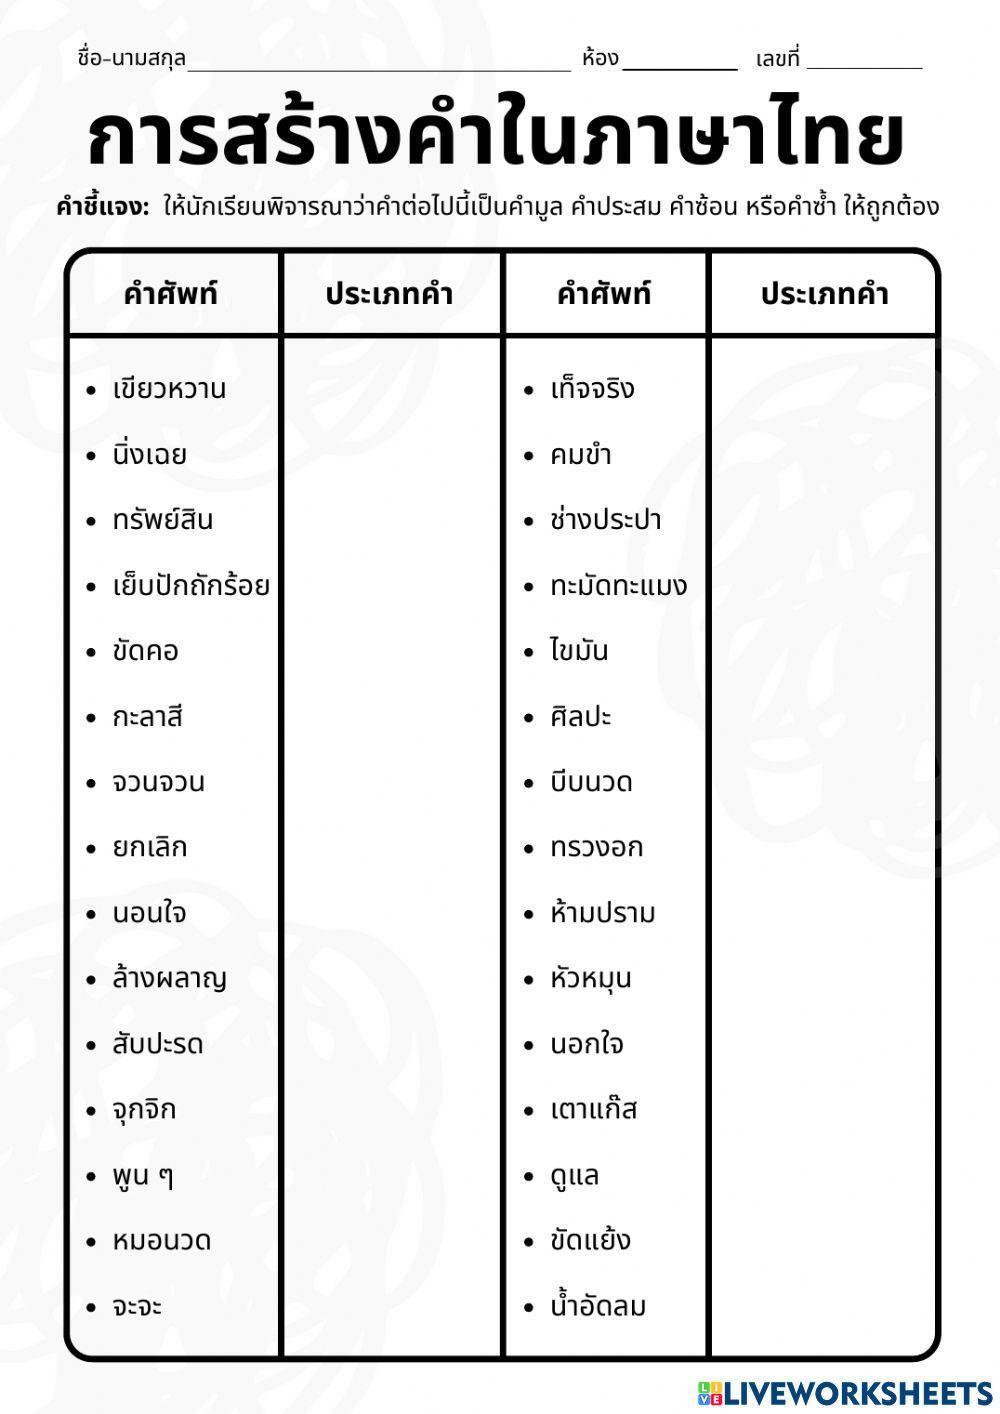 แบบฝึกทักษะ เรื่อง การสร้างคำในภาษาไทย